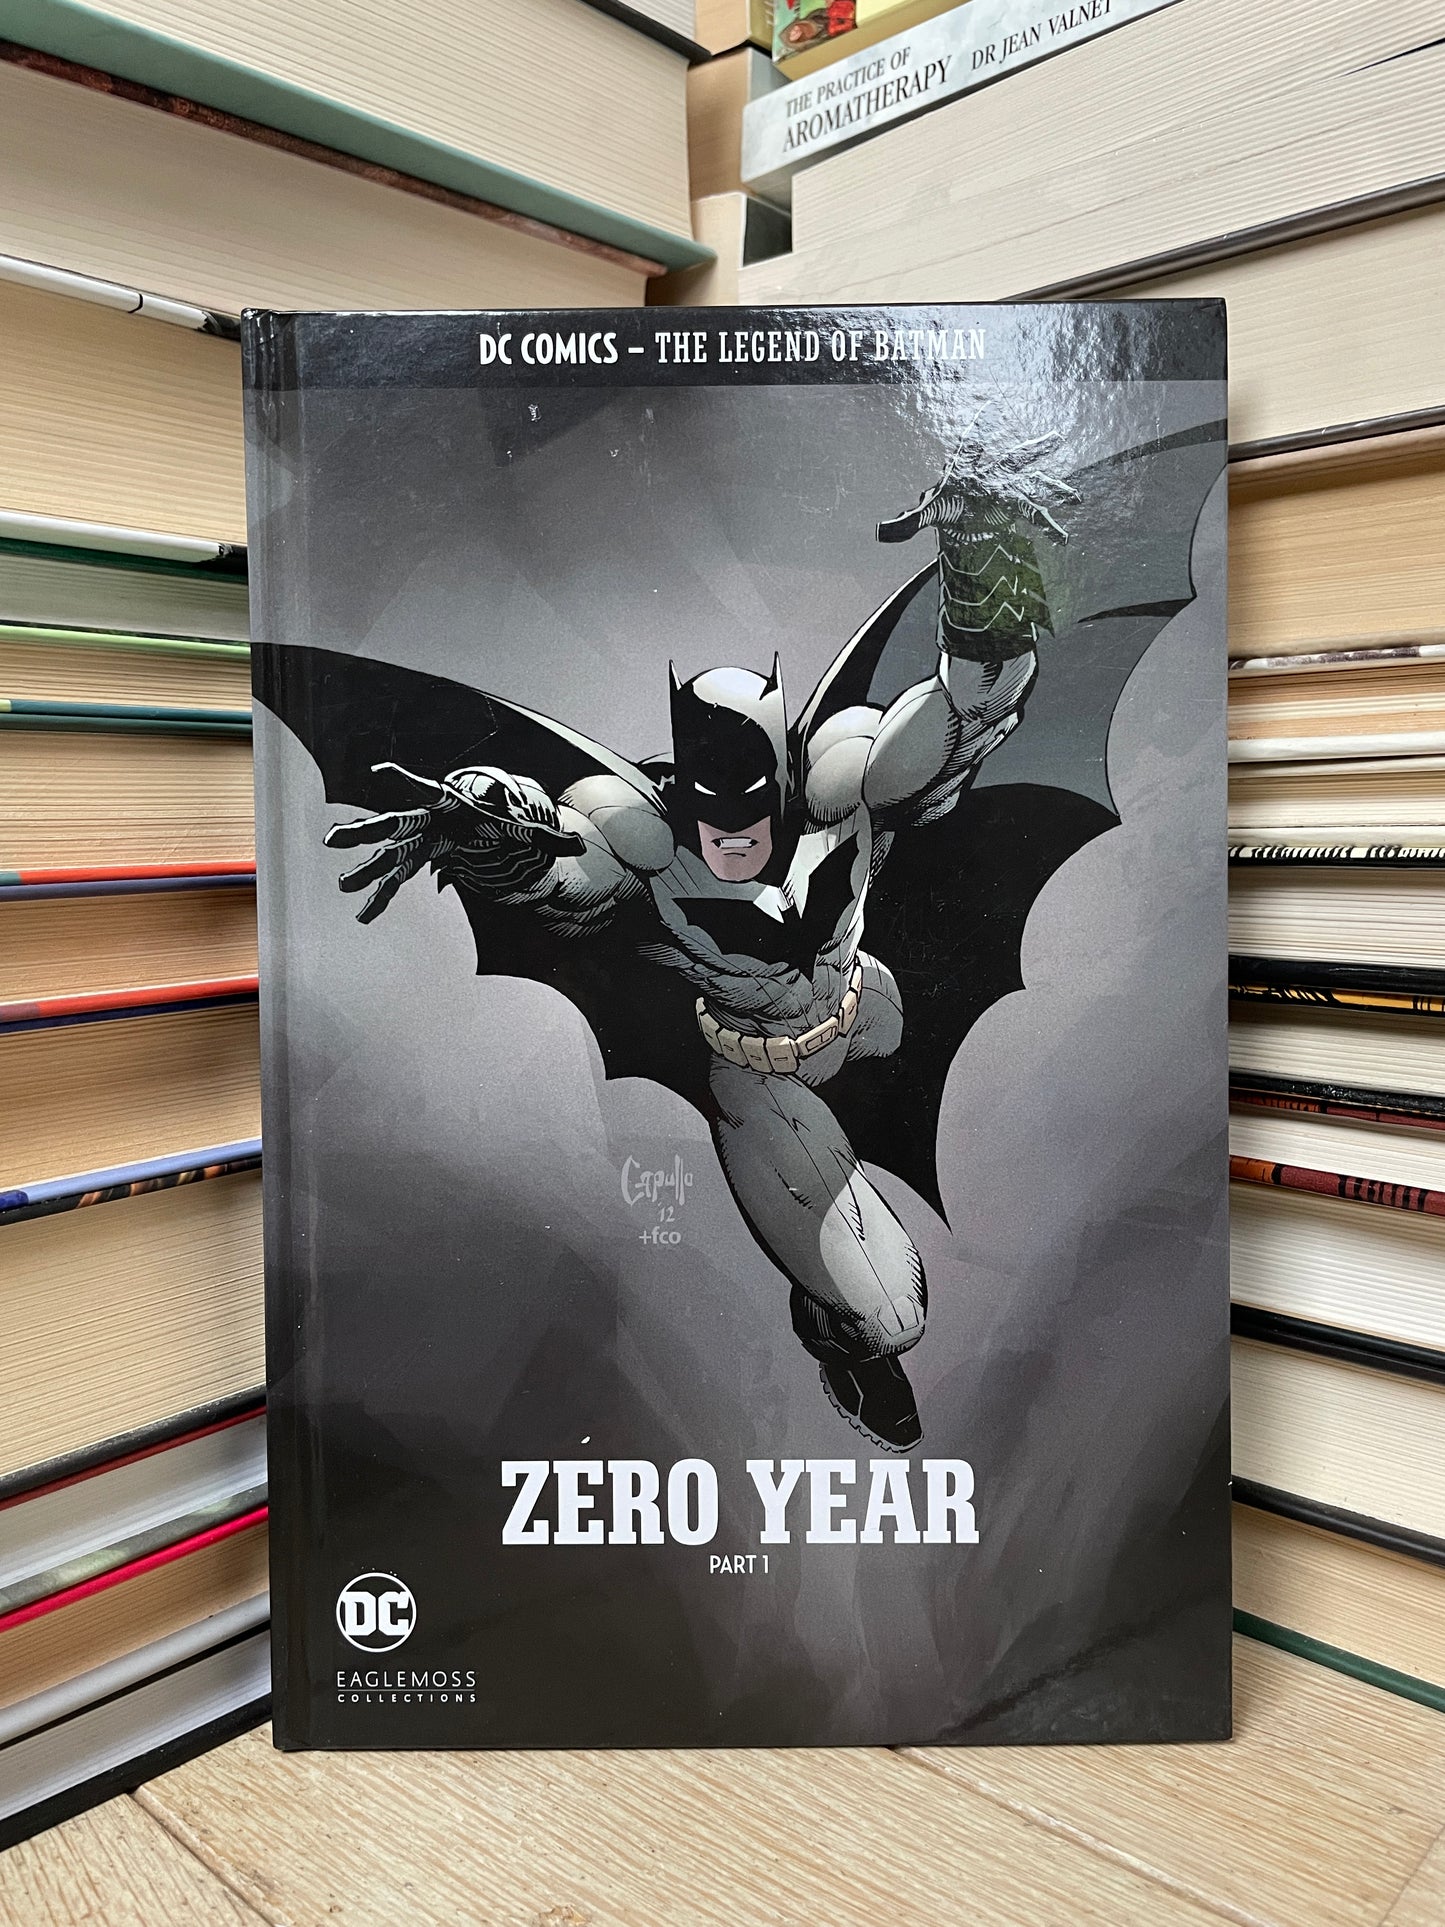 Scott Snyder - The Legend of Batman: Zero Year